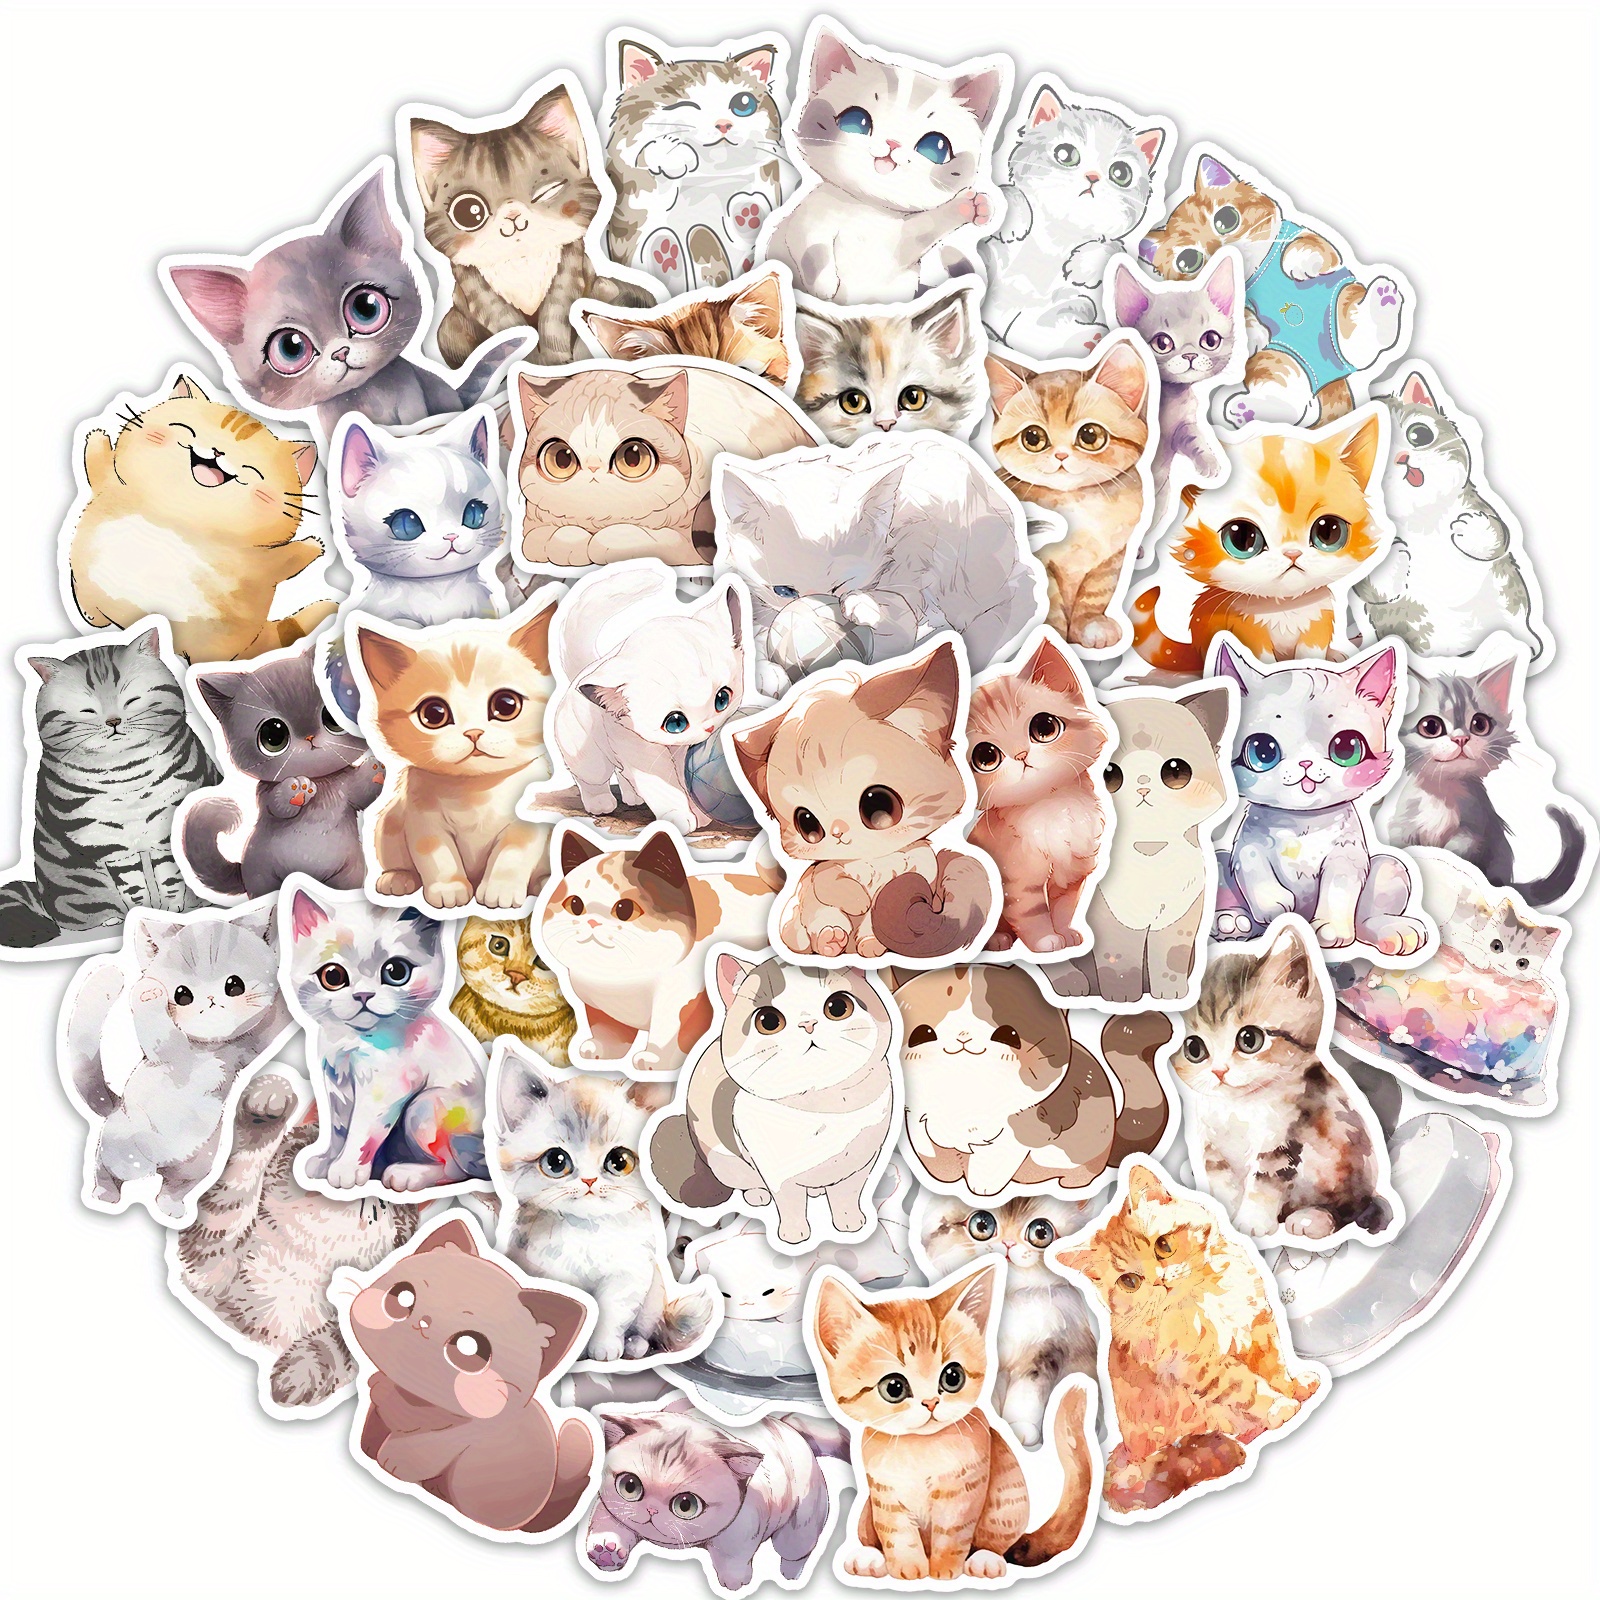  100 Pcs Cute Cat Stickers, Aesthetic Cat Waterproof Vinyl  Stickers for Water Bottle Kids Adults Girls Women Kitten Stickers